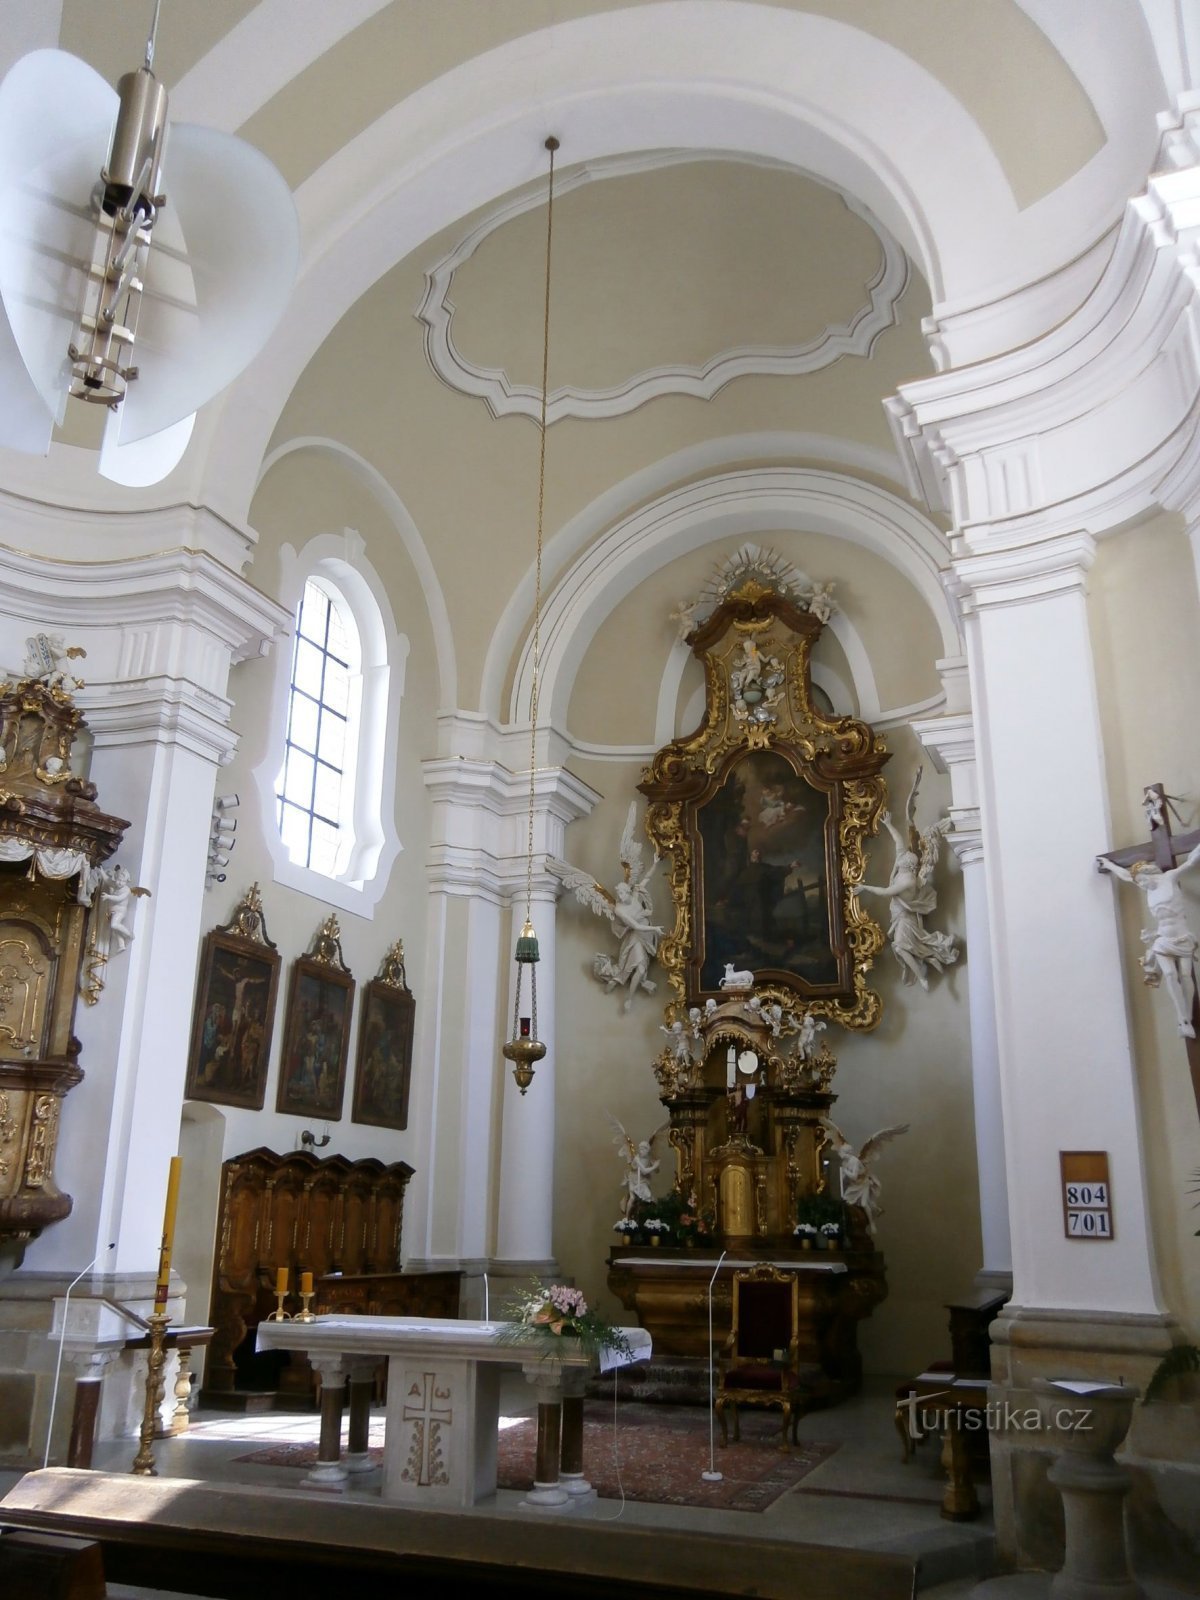 Interieur van de kerk van St. Antonína (Hradec Králové, 23.5.2014 mei XNUMX)